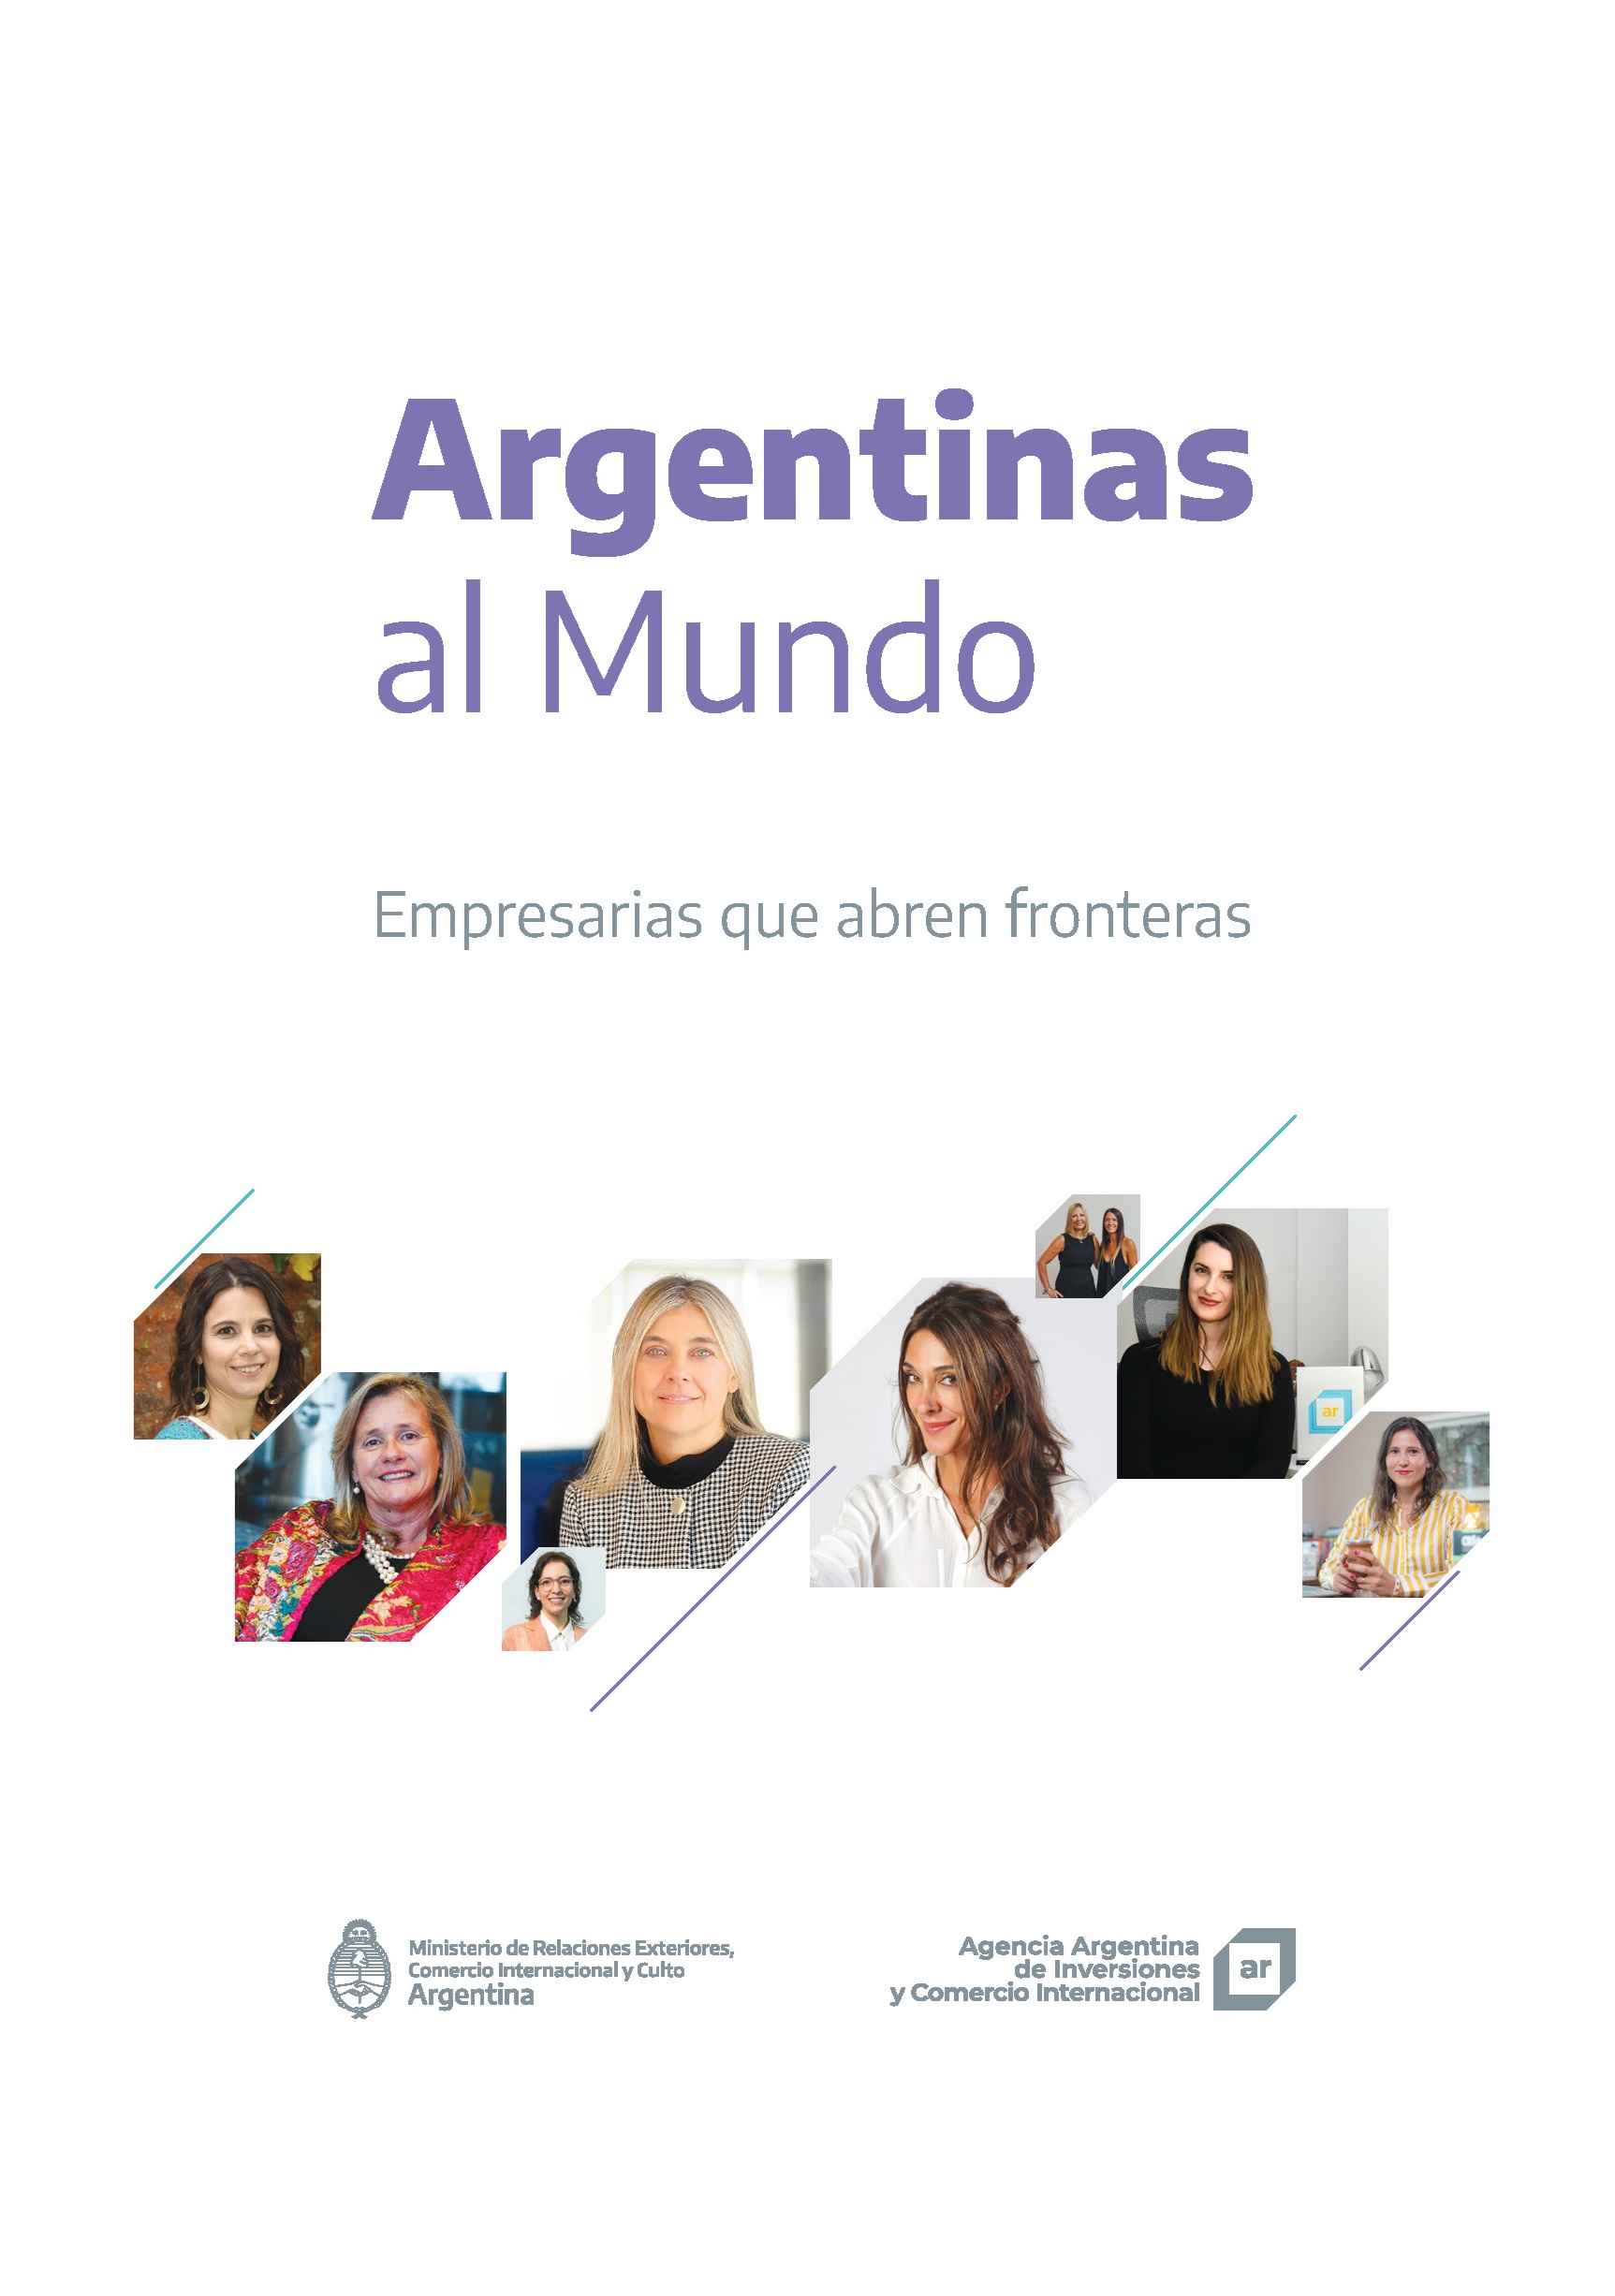 https://www.inversionycomercio.org.ar/images/publicaciones/Argentinas al Mundo. Empresarias que abren fronteras